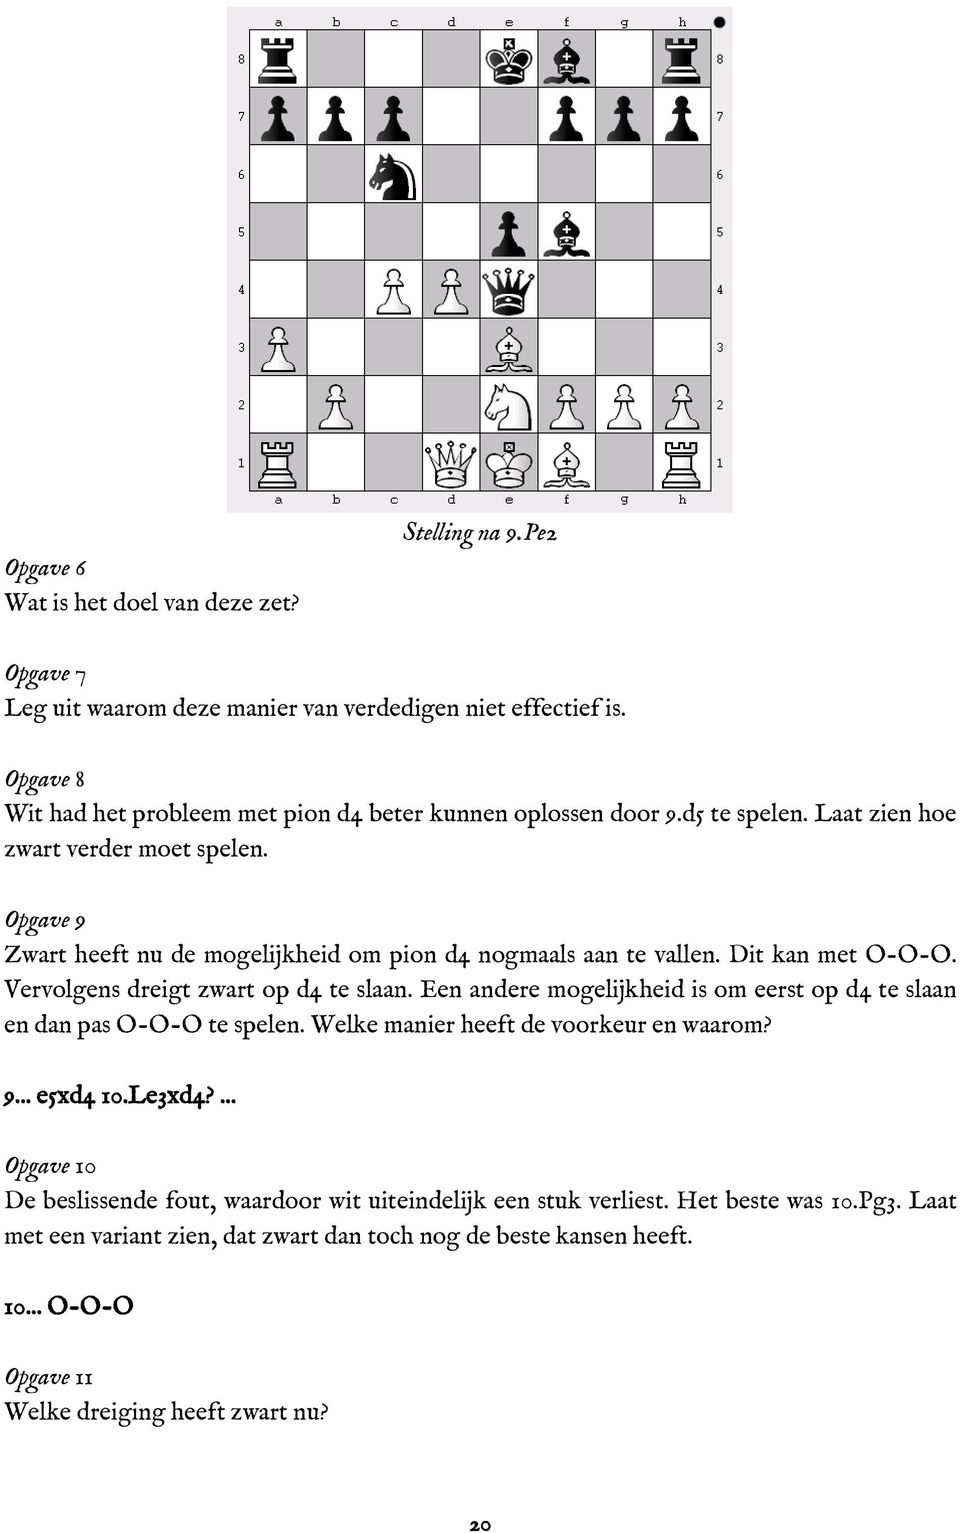 Opgave 9 Zwart heeft nu de mogelijkheid om pion d4 nogmaals aan te vallen. Dit kan met O-O-O. Vervolgens dreigt zwart op d4 te slaan.